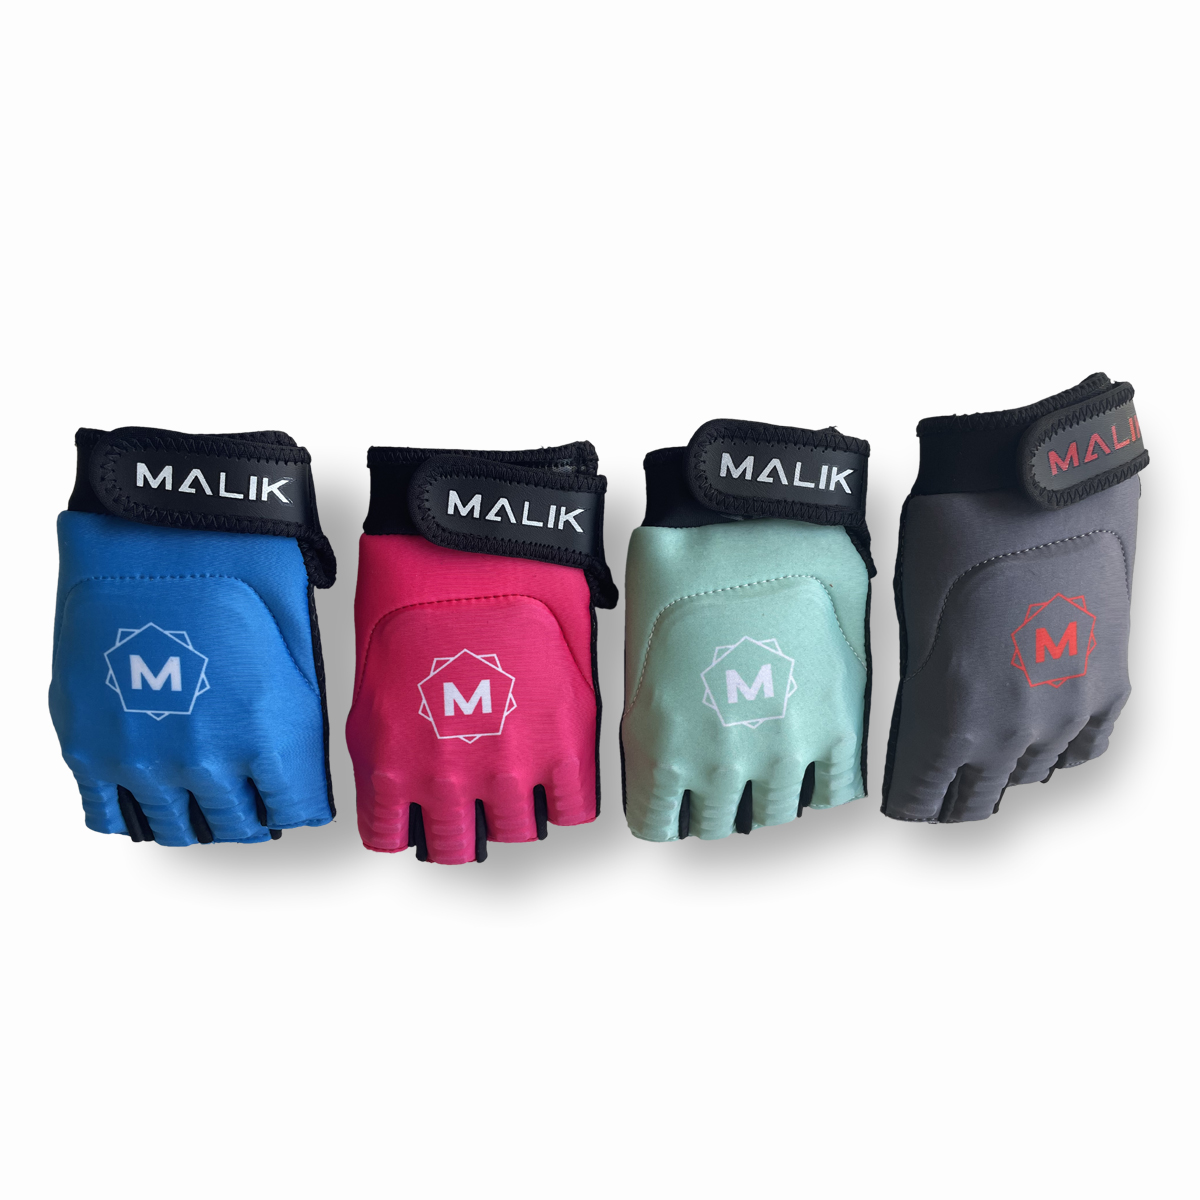 MALIK - Pro Glove